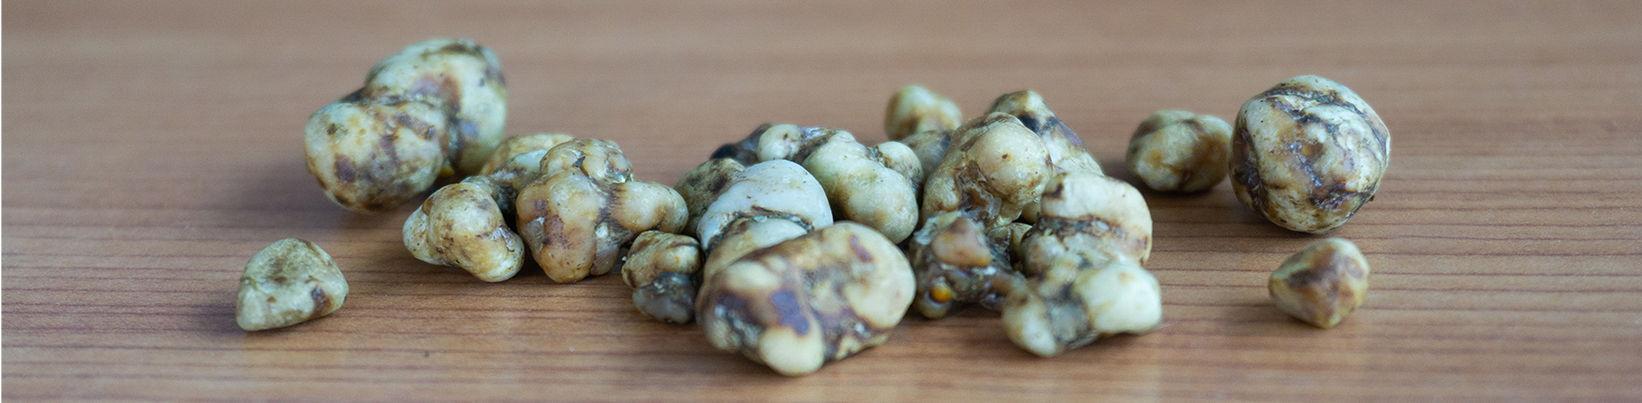 hoe eet je magische truffels